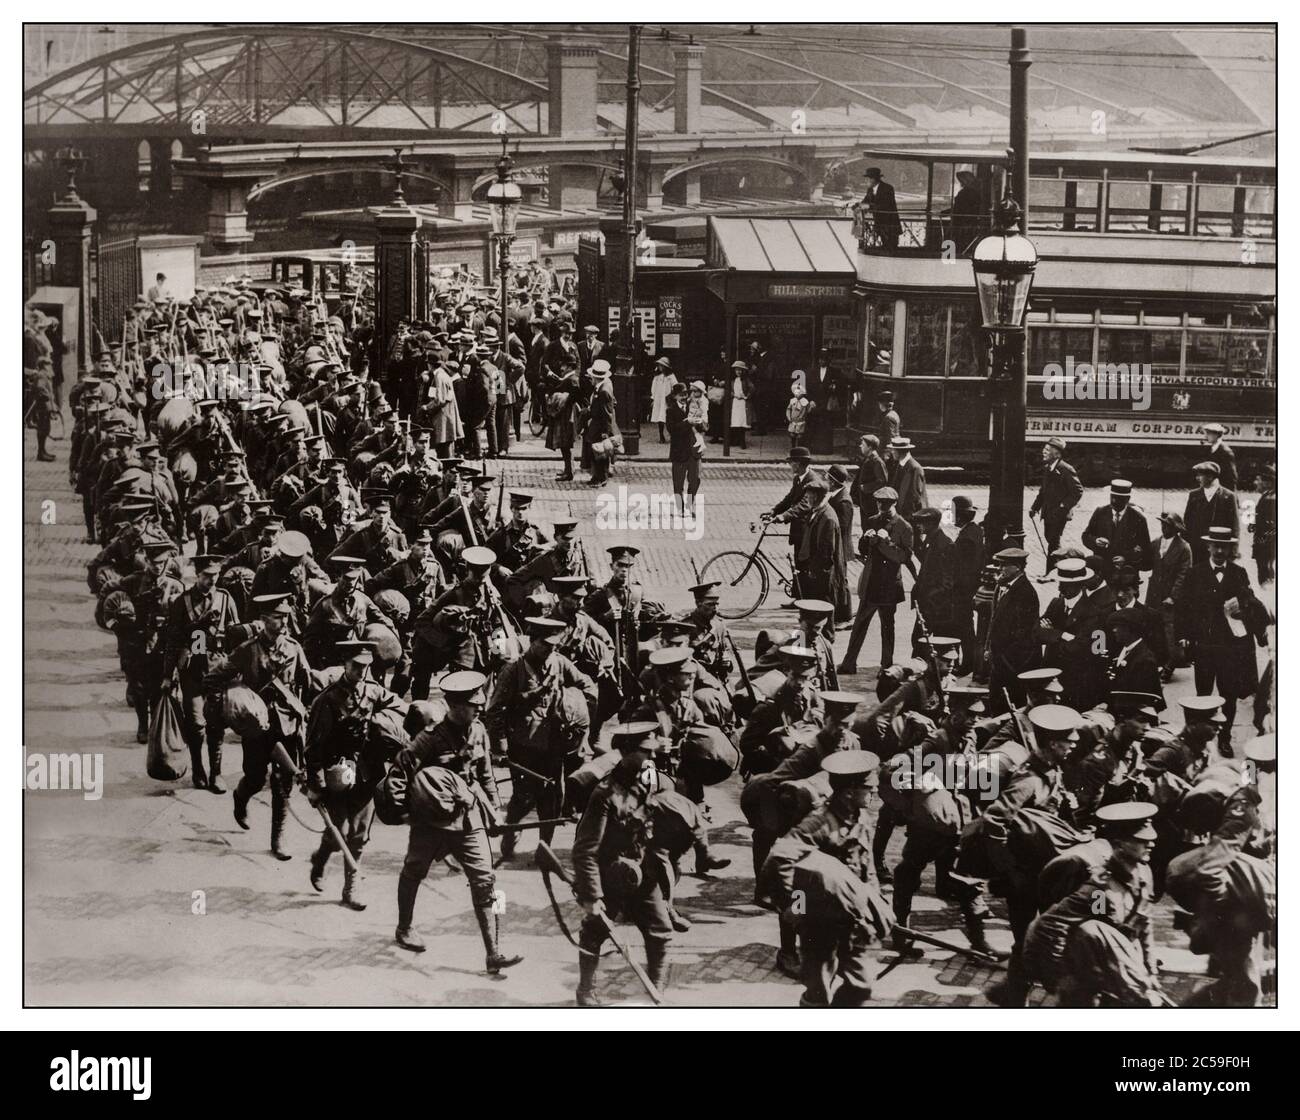 Truppenmobilisierung im Ersten Weltkrieg Soldaten der Armee marschieren durch den Bahnhof von Birmingham in Großbritannien, um an der Westfront zu kämpfen. 1914. Erster Weltkrieg, erster Weltkrieg WW1 der große Krieg BIRMINGHAM GROSSBRITANNIEN Stockfoto